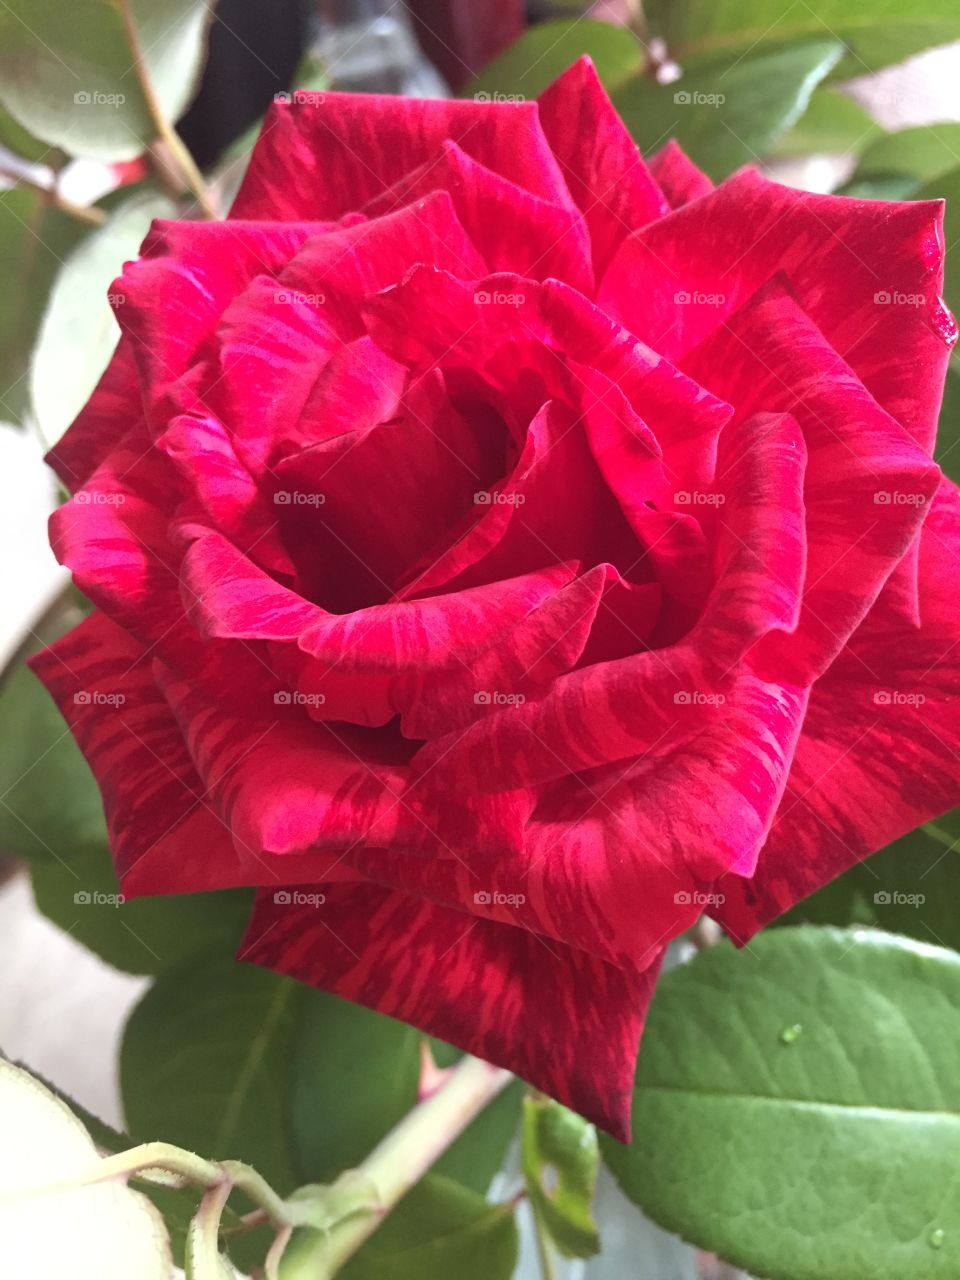 Beautiful Roses 